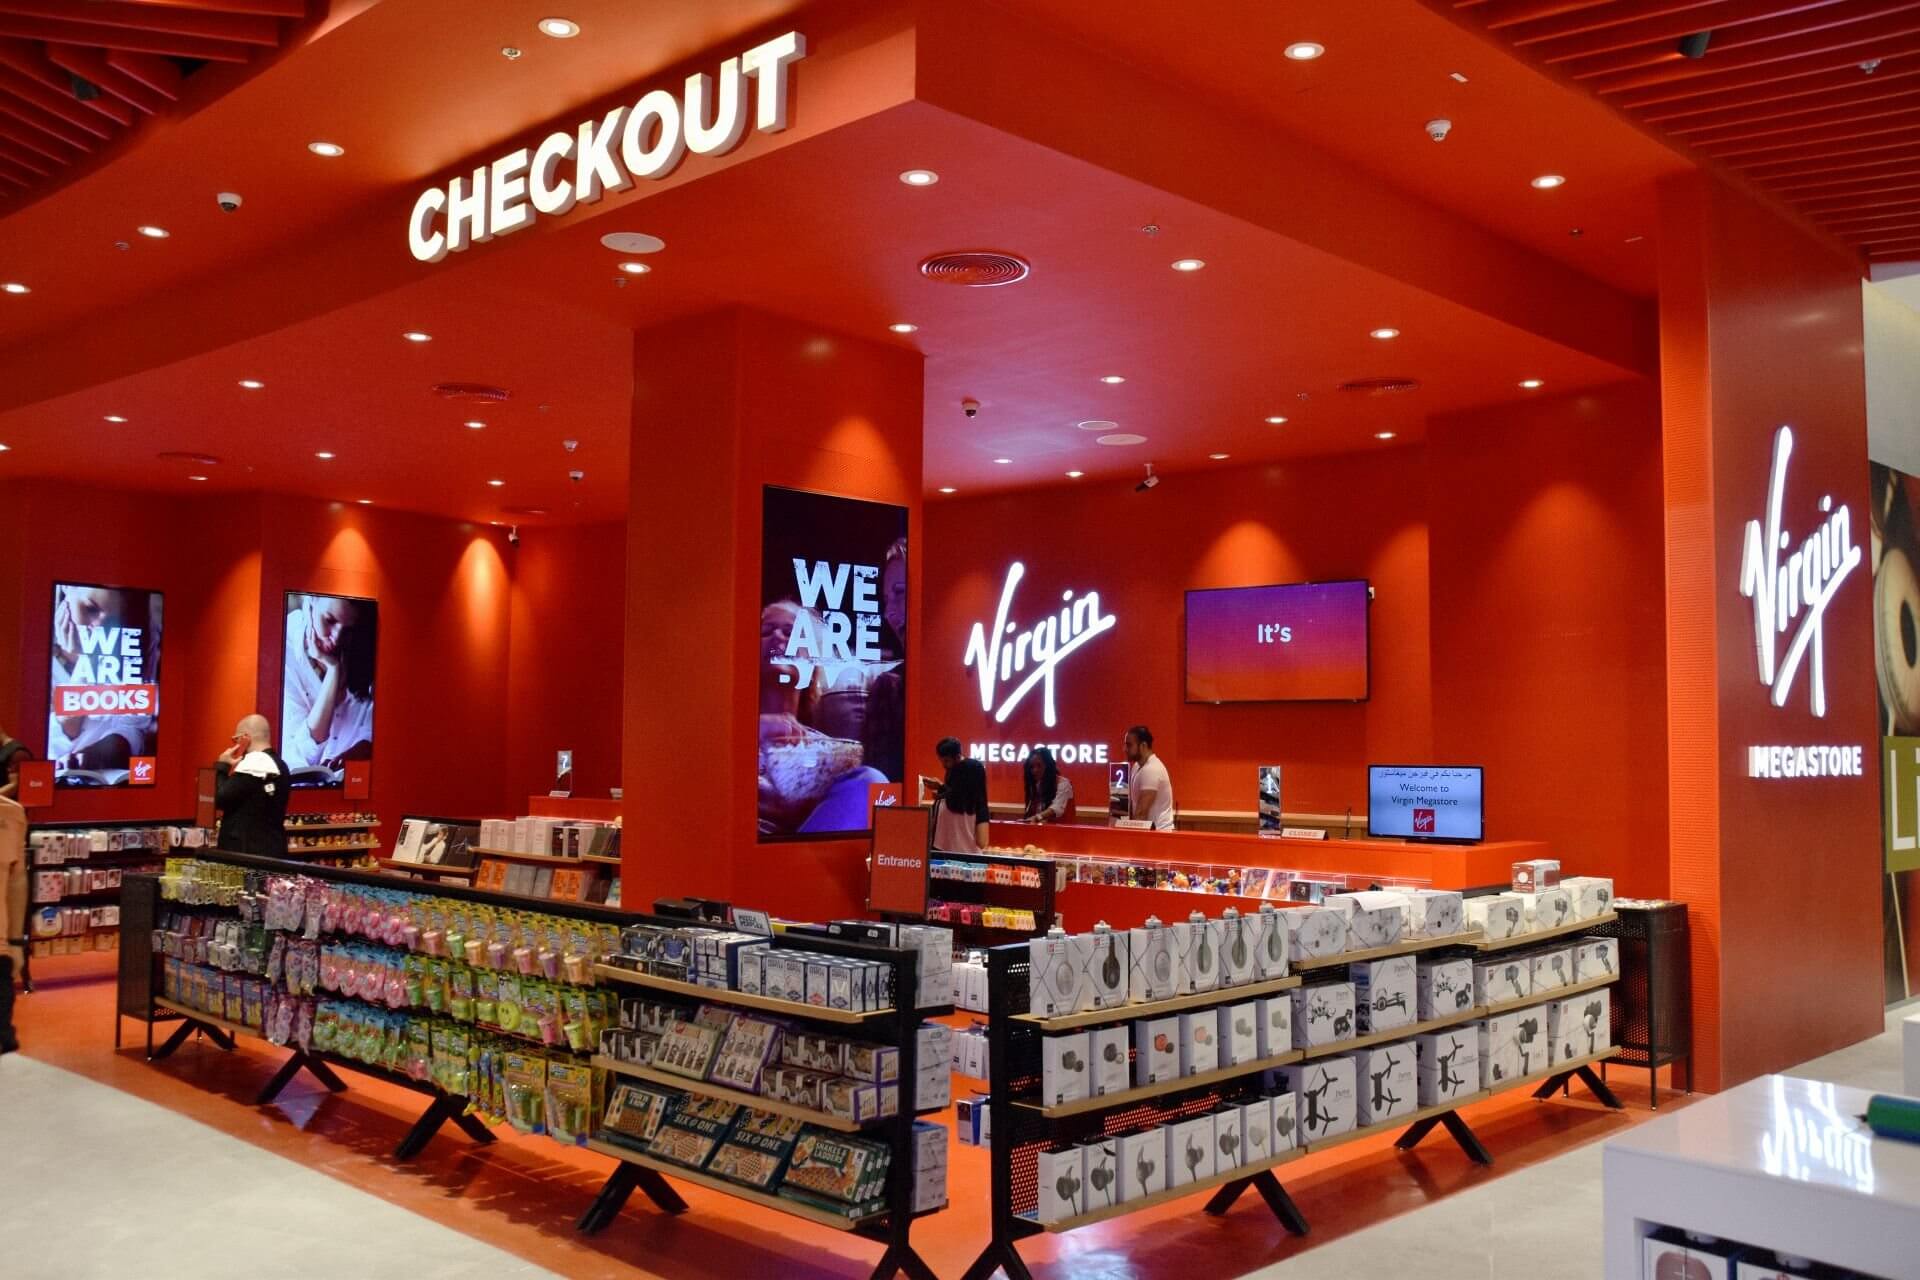 Các khu vực trưng bày sản phẩm âm nhạc như đĩa CD, DVD mang đến thiết kế cá tính, độc đáo thu hút khách hàng có thể vừa mua hàng vừa check in